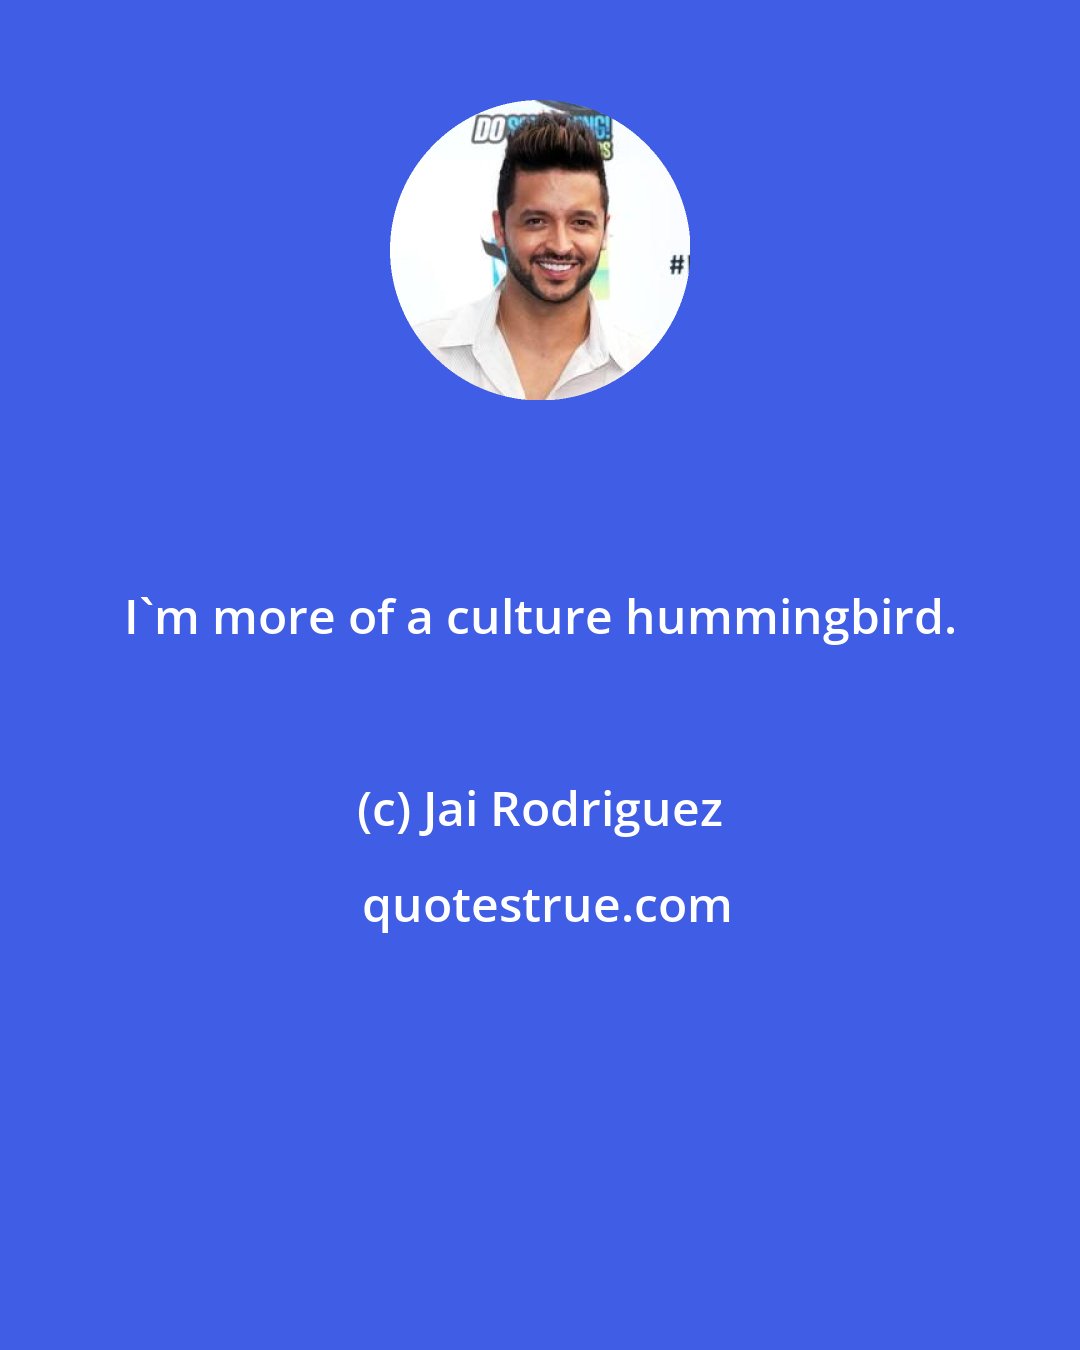 Jai Rodriguez: I'm more of a culture hummingbird.